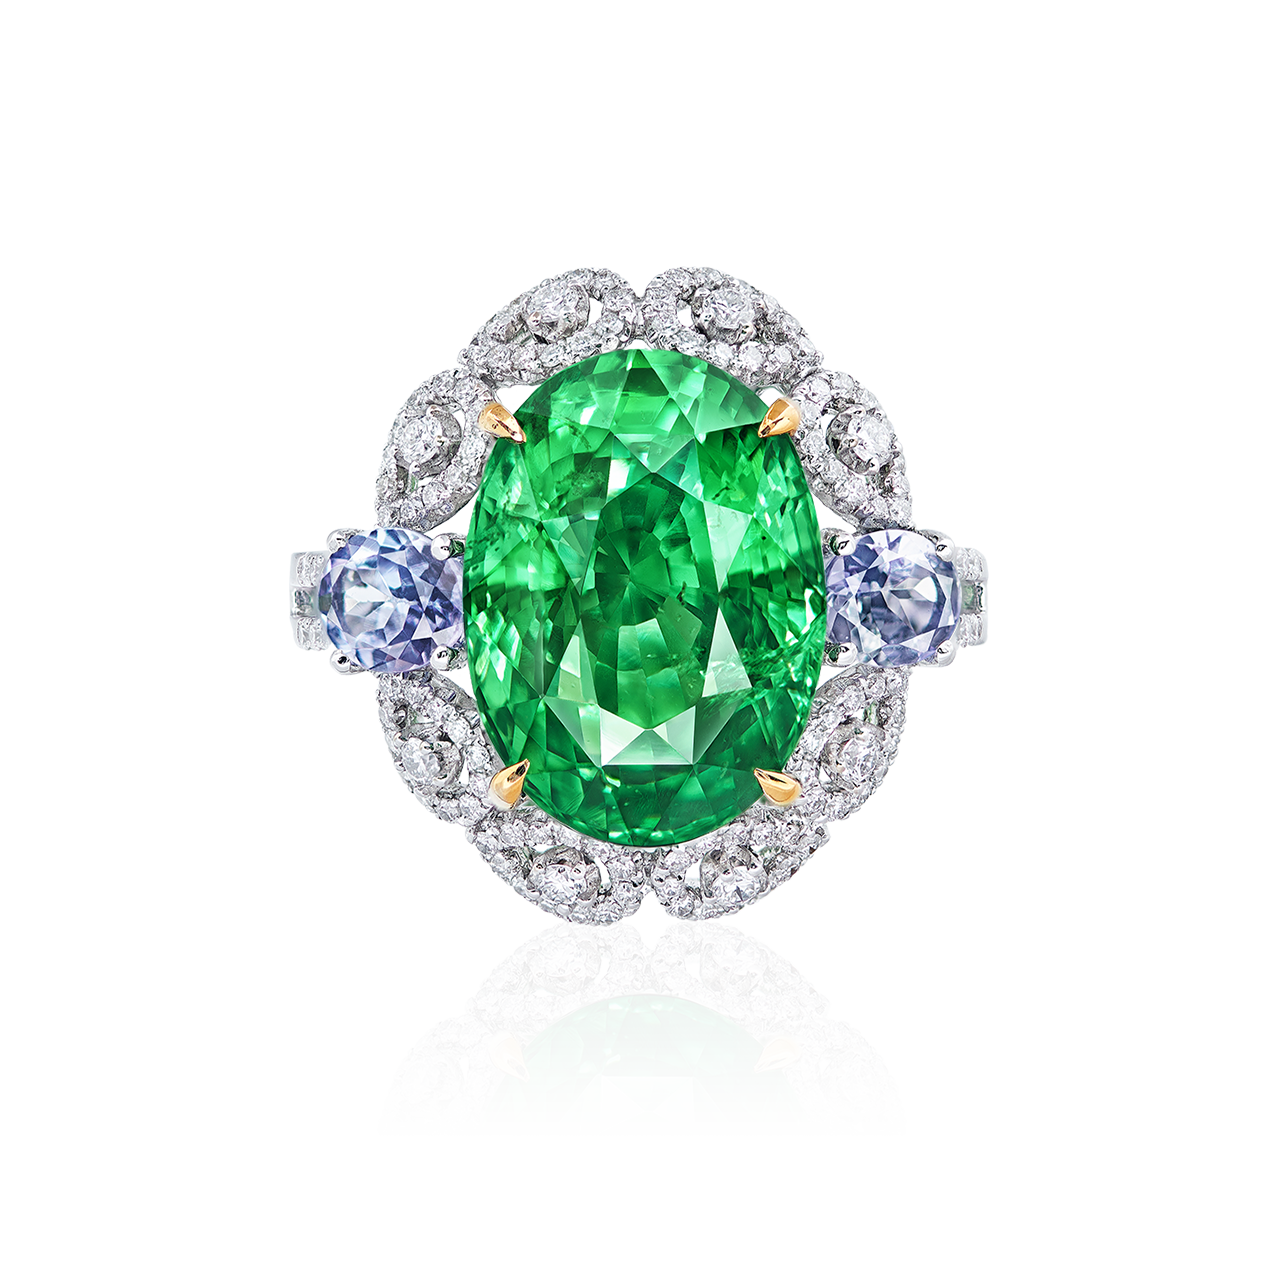 9.04克拉 艷彩沙弗萊鑽戒
Vivid Green Tsavorite Garnet 
and Diamond Ring